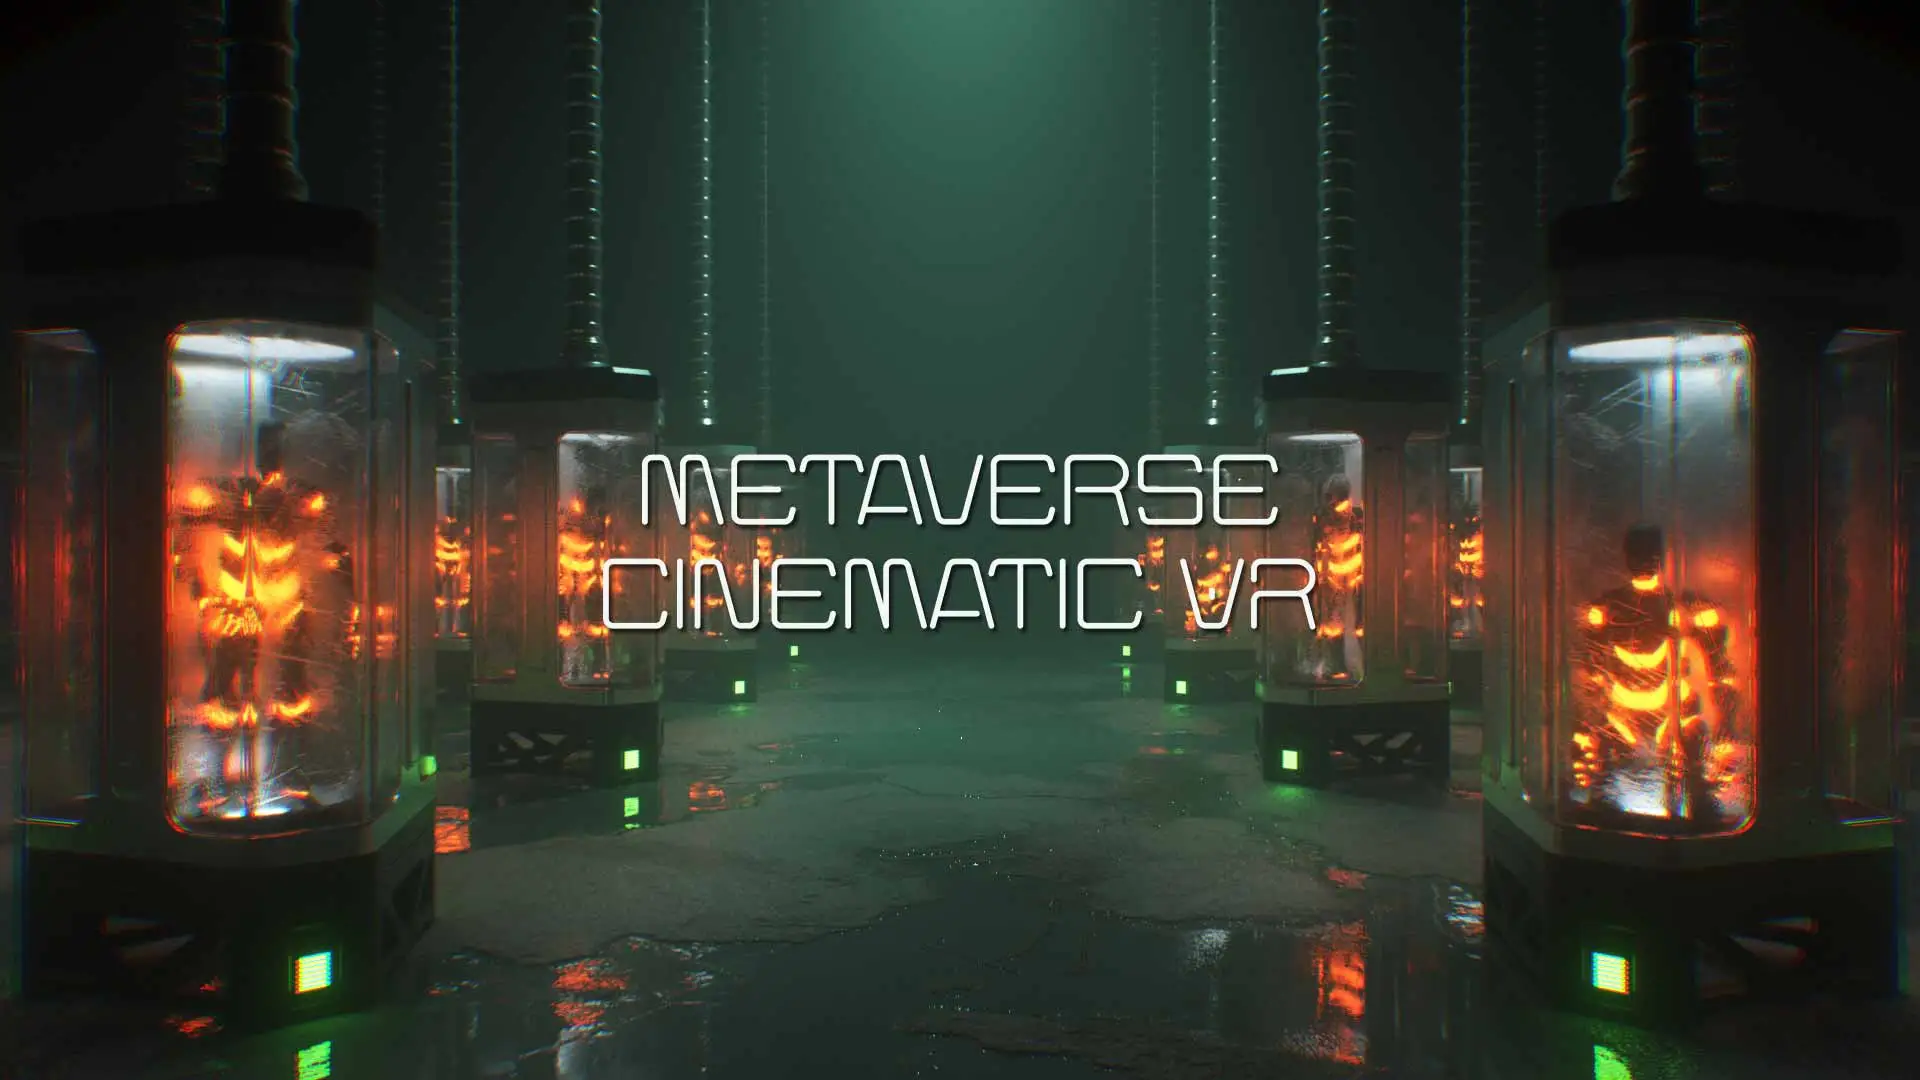 img
Metaverse Cinematic VR